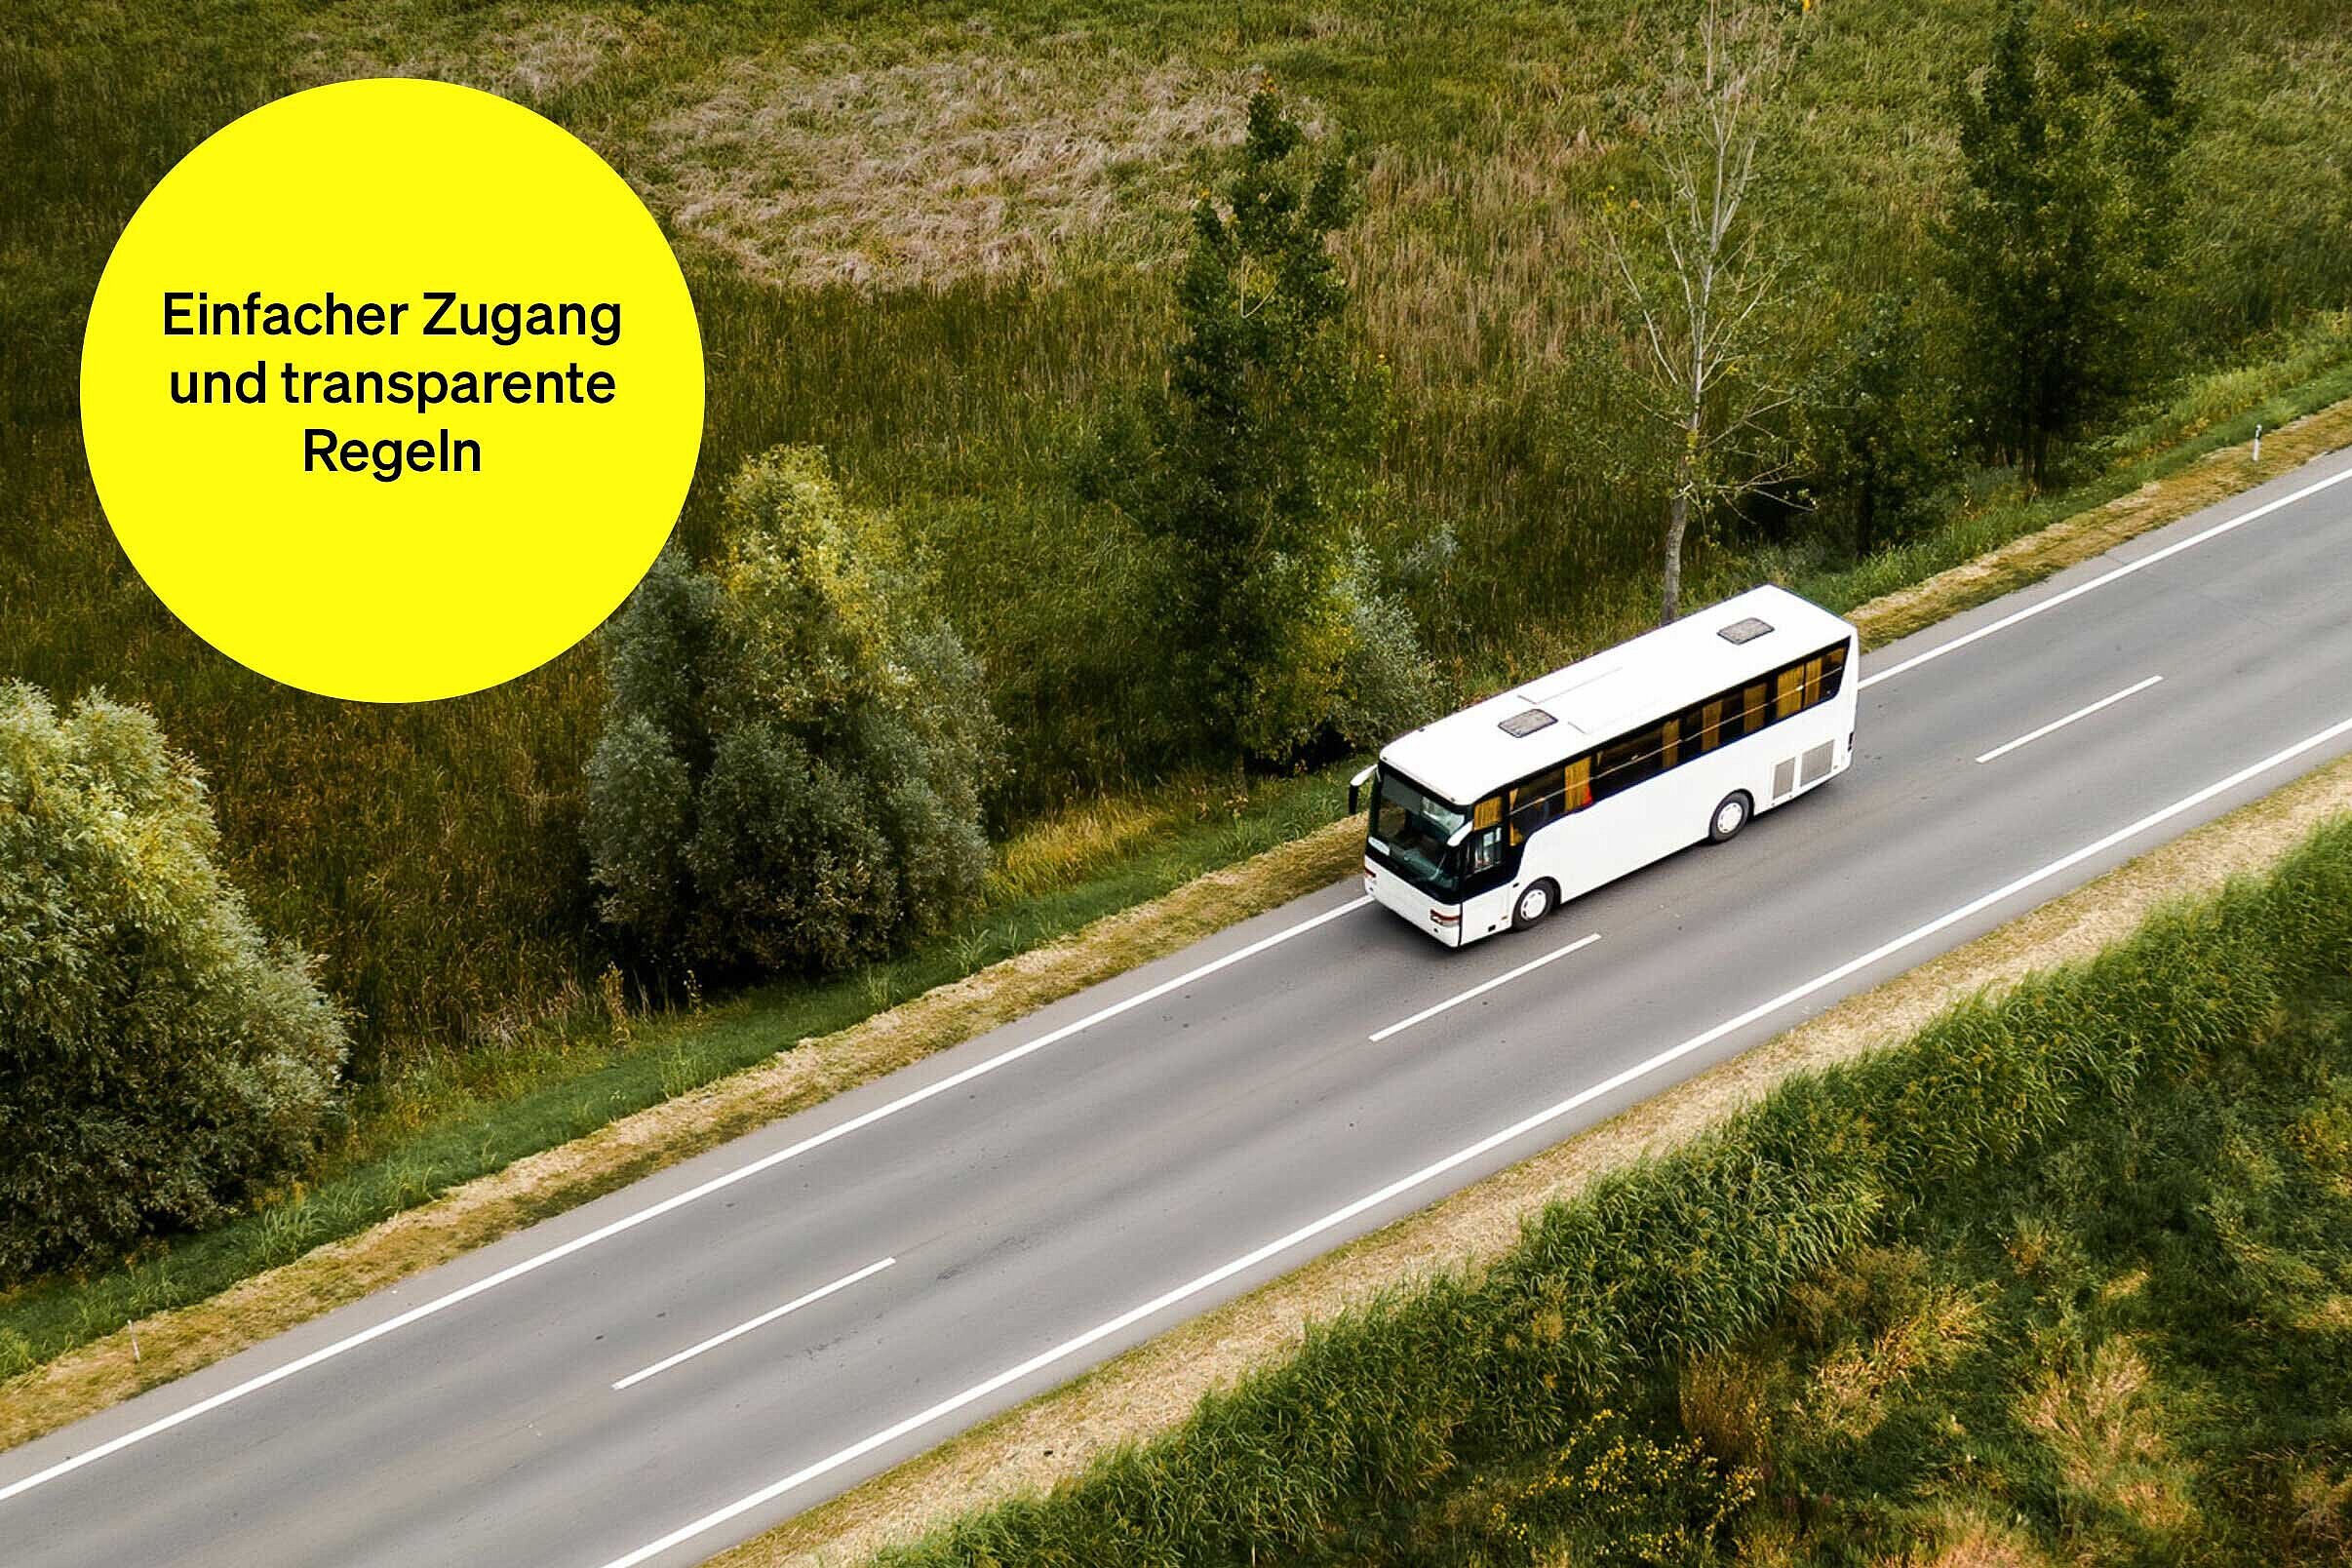 Weißer Bus fährt auf einer freien Straße durch grüne Landschaft – Textbaustein in runder Kachel: Einfacher Zugang und transparente Regeln